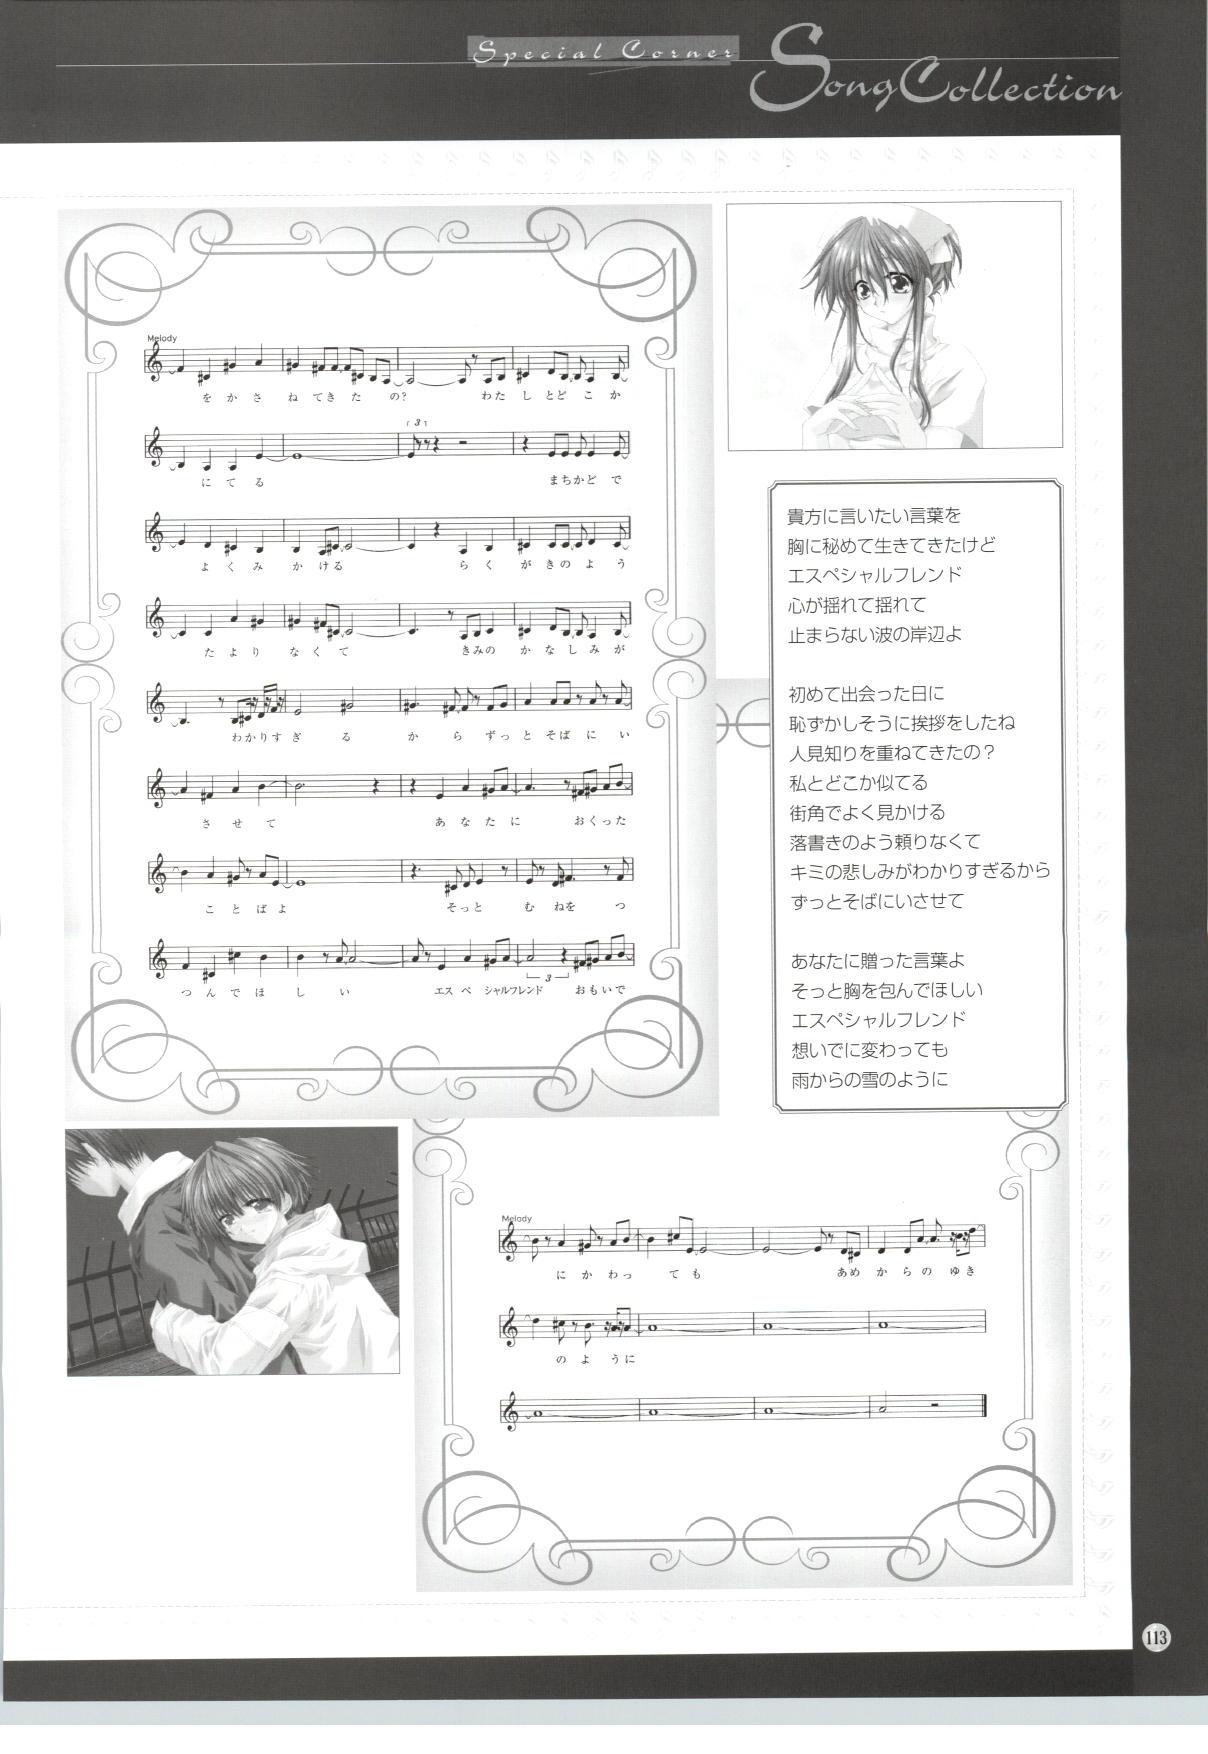 [Sakurazawa Izumi] Silence - Seinaru Yoru no Kane no Naka de... Tenshi no Album - Sakurazawa Izumi Artworks 107